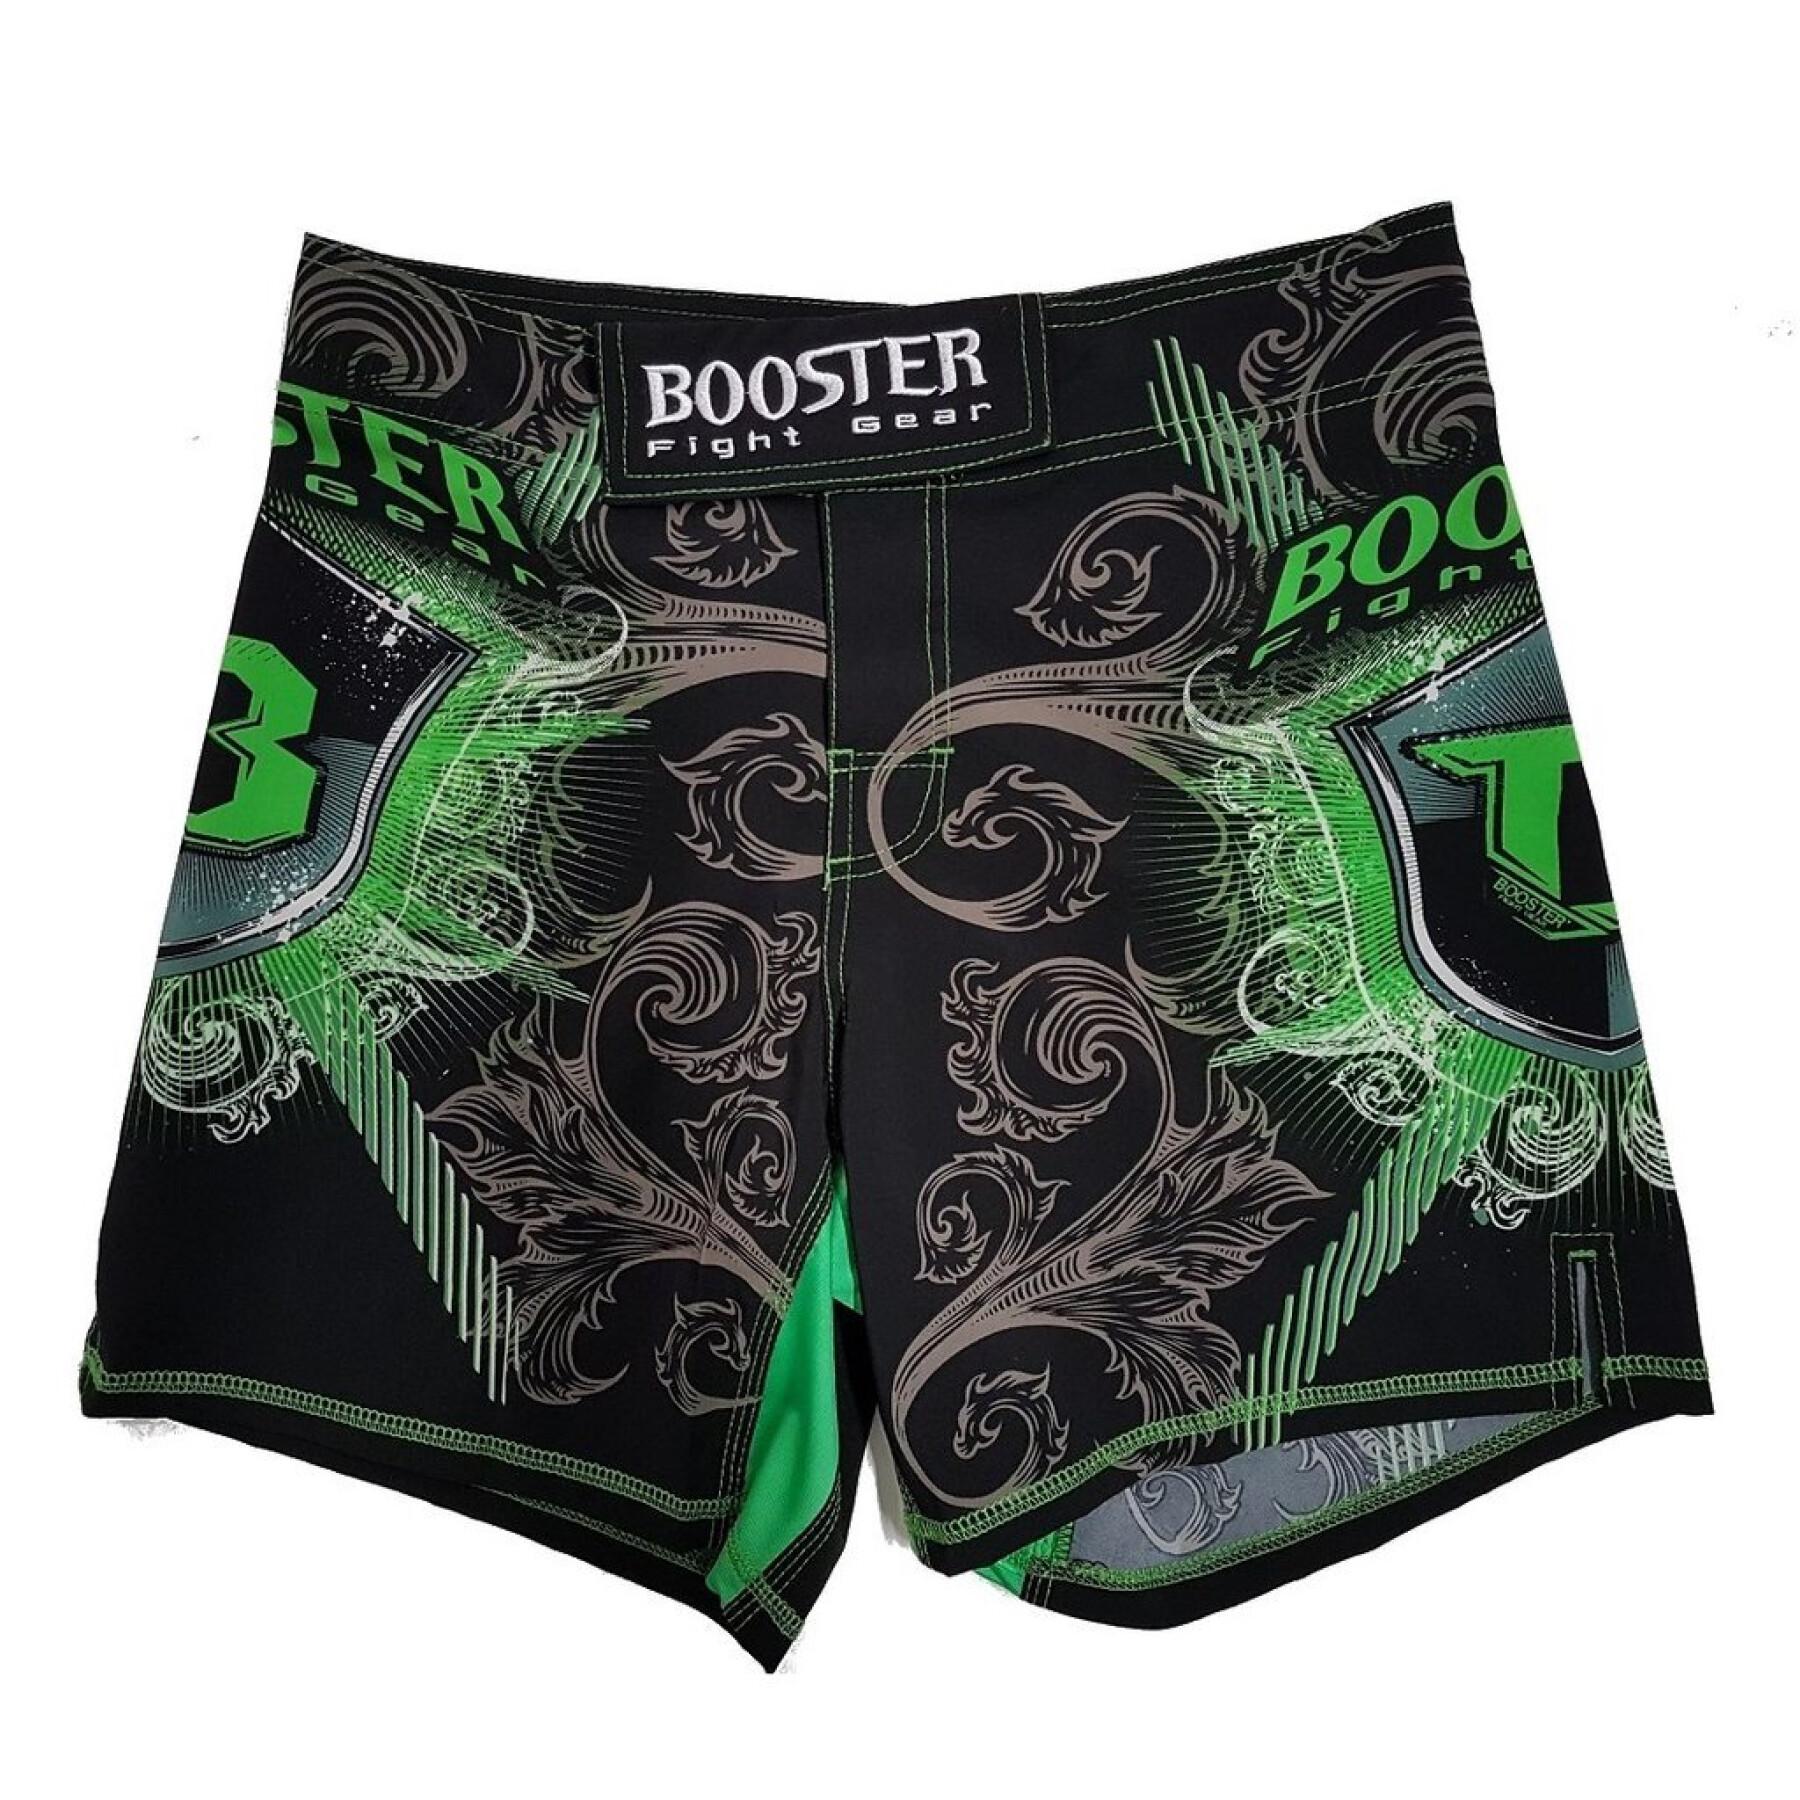 shorts de mma Booster Fight Gear Pro 15